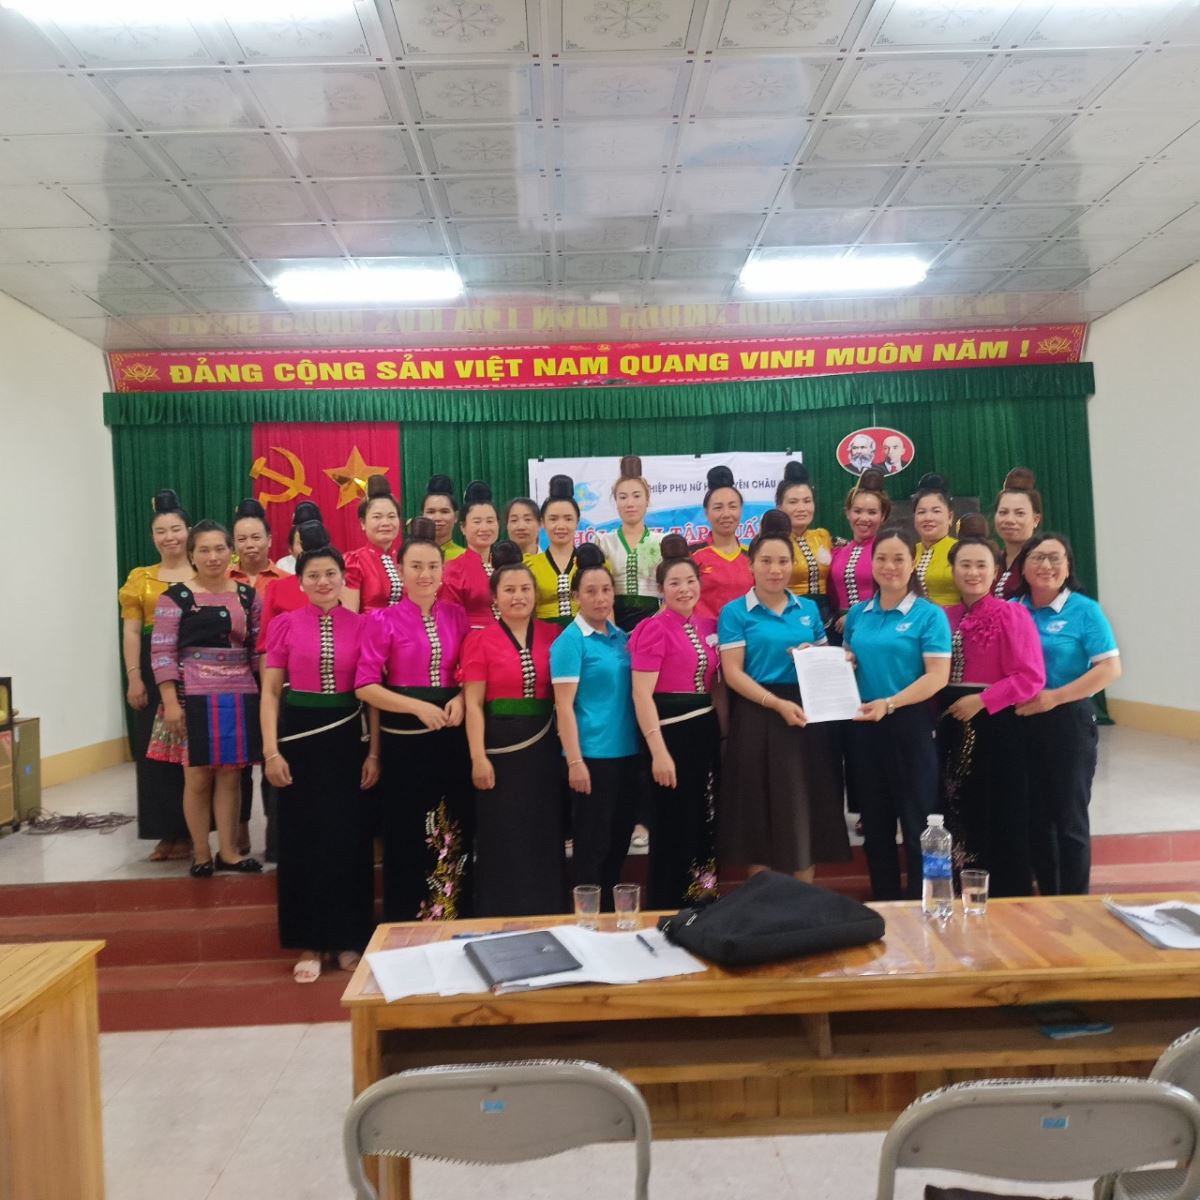 Hội LHPN huyện Yên Châu tổ chức hội nghị tập huấn hướng dẫn giáo dục cha, mẹ trong chăm sóc, bảo vệ trẻ em, một số vấn đề cấp thiết đối với phụ nữ và trẻ em, ra mắt mô hình “Nuôi dạy con tốt”